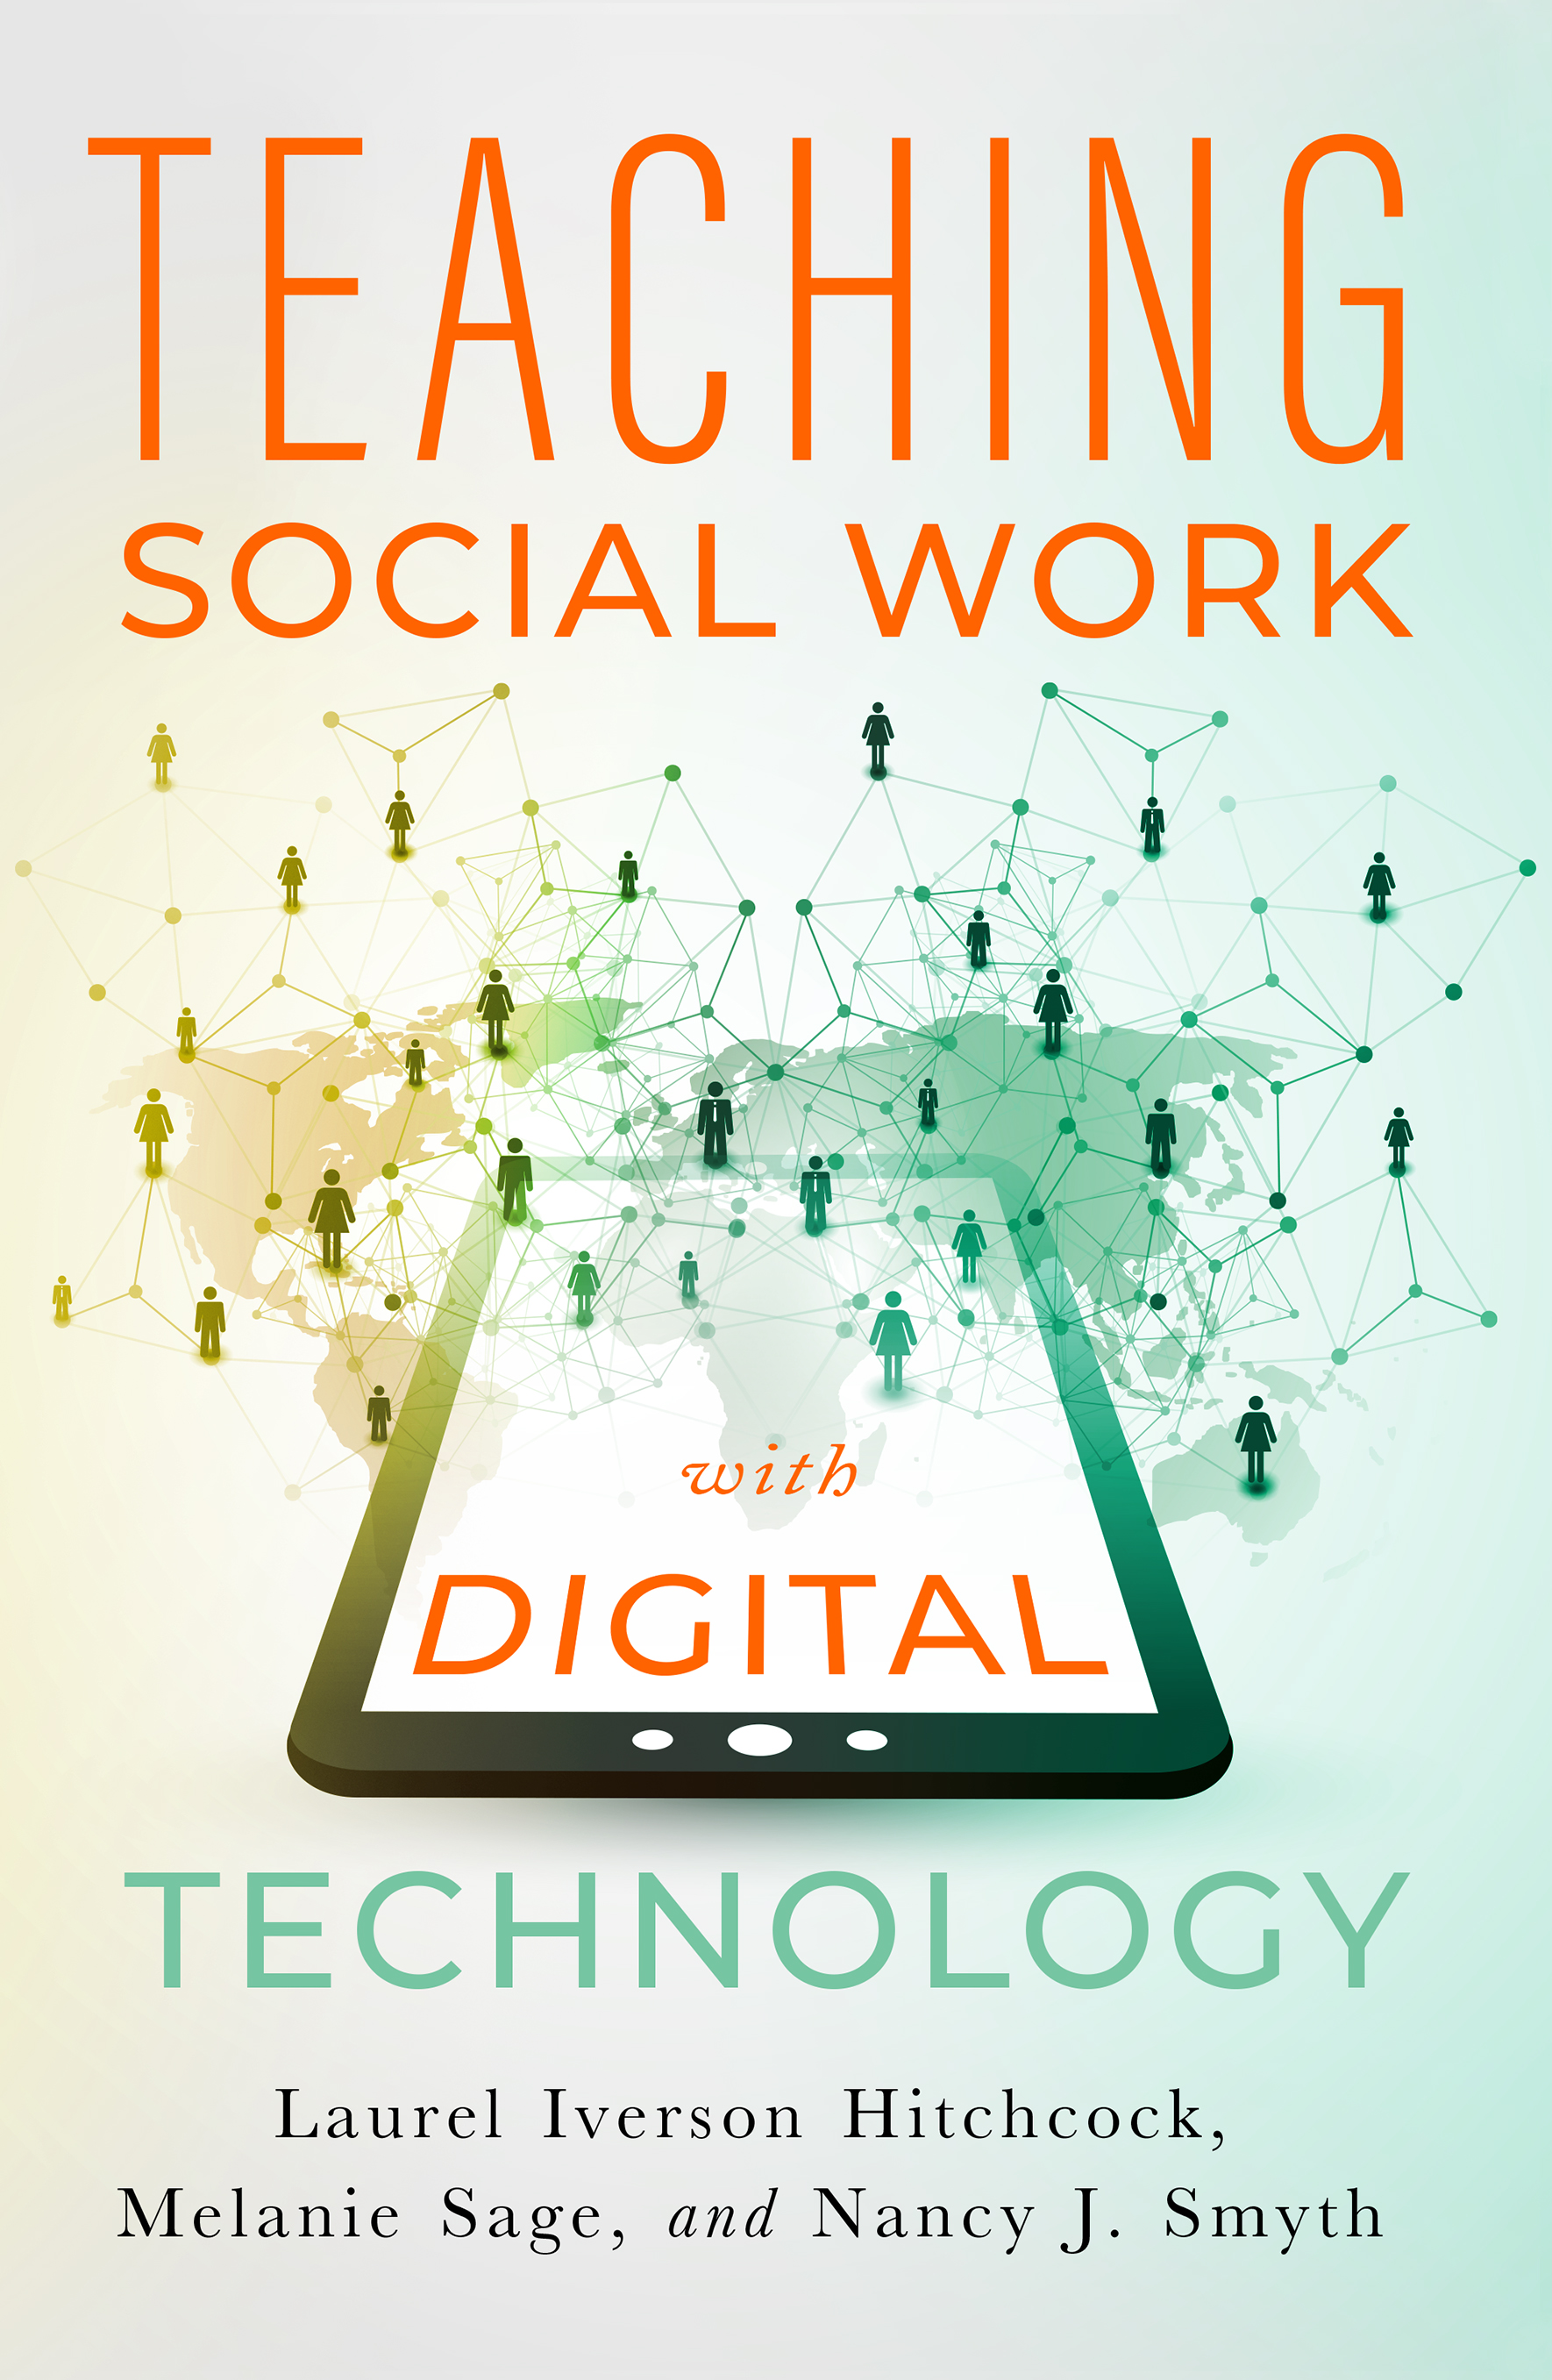 TeachingSocialWork_DigitalTechnology_cover.jpg